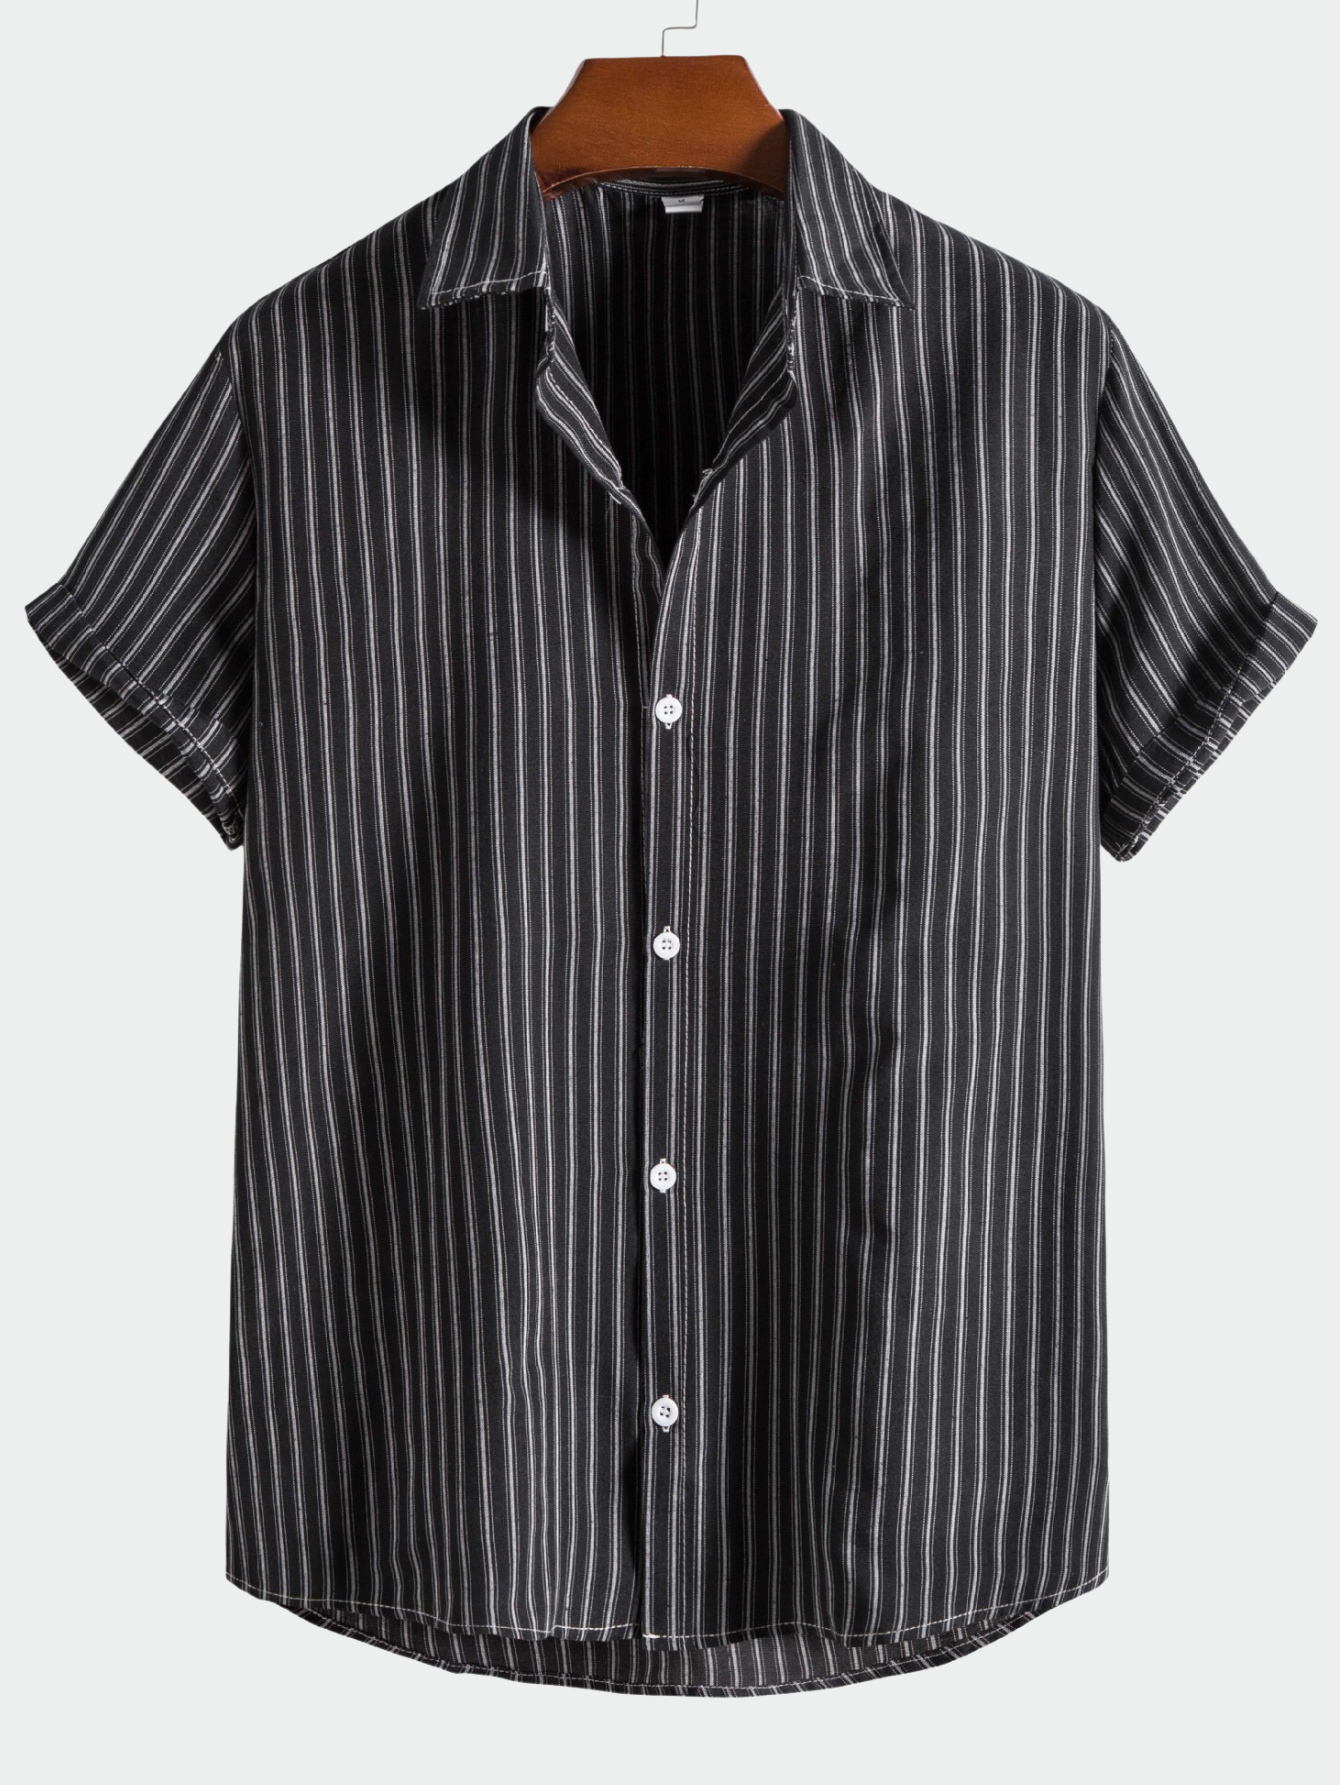 Men's Striped Linen Solid Short Sleeve Shirt